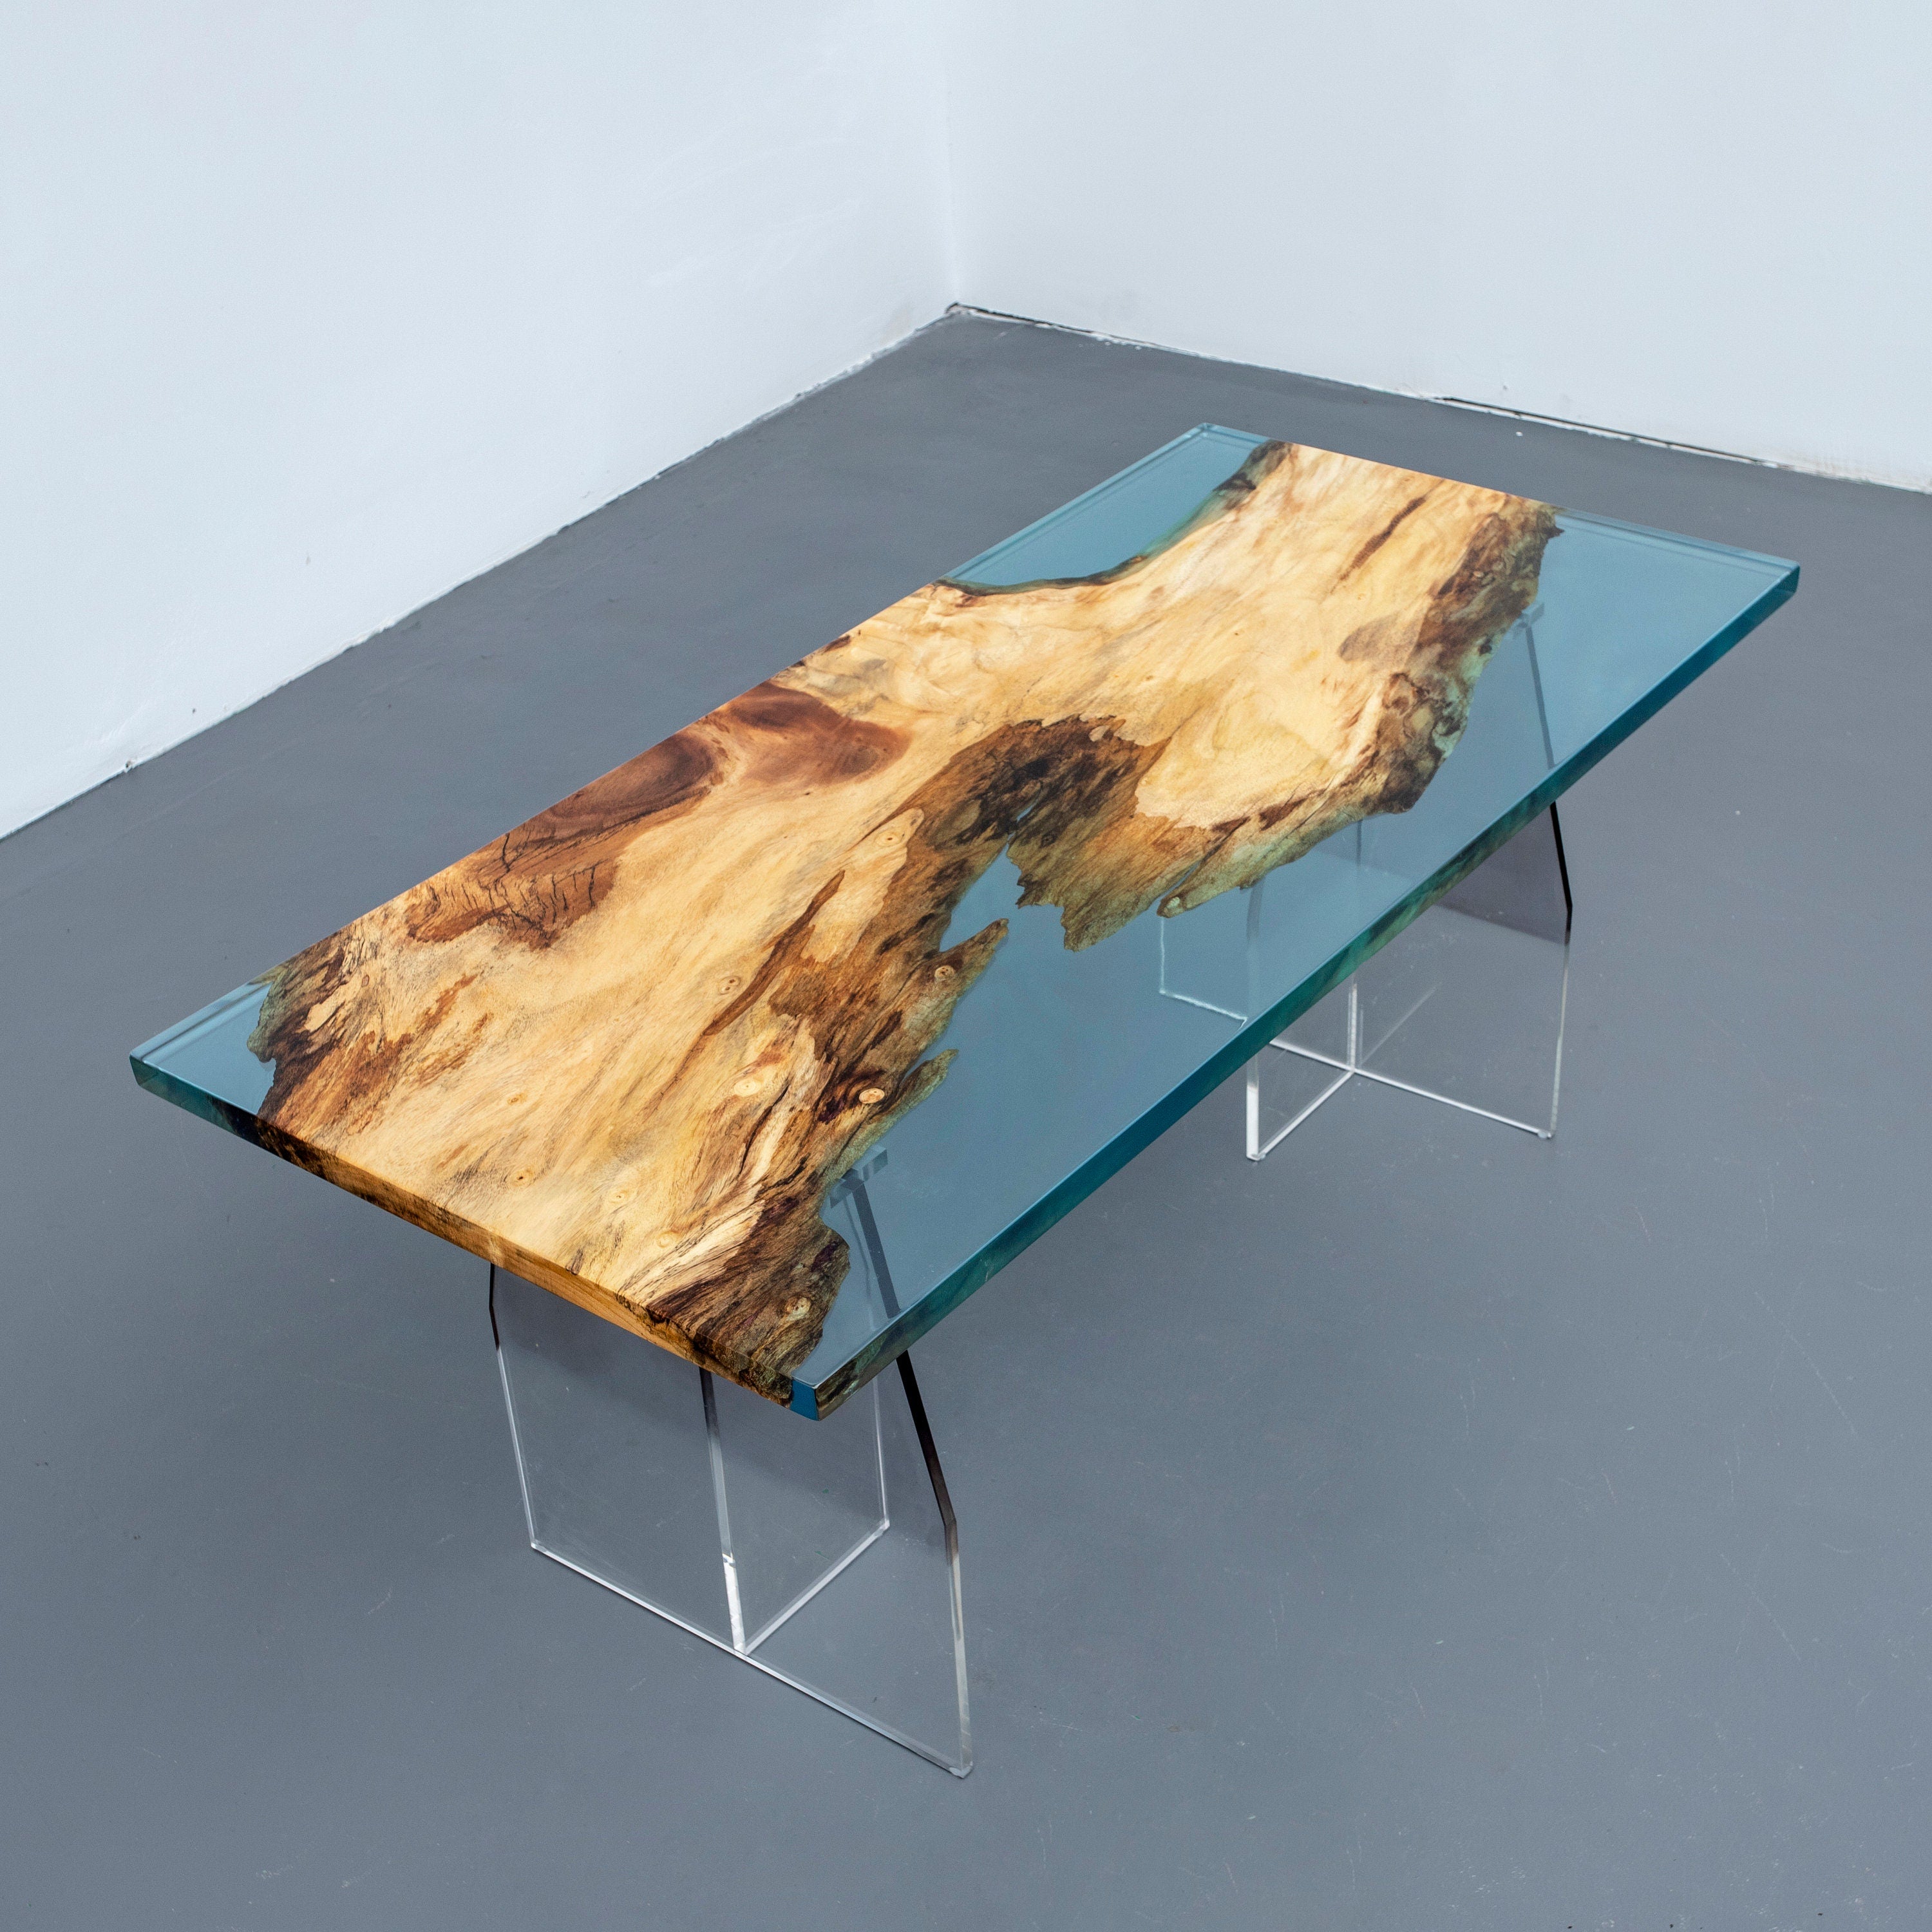 オーダーメイドオリーブエポキシテーブル、カスタムライブエッジエポキシ樹脂ダイニングテーブル